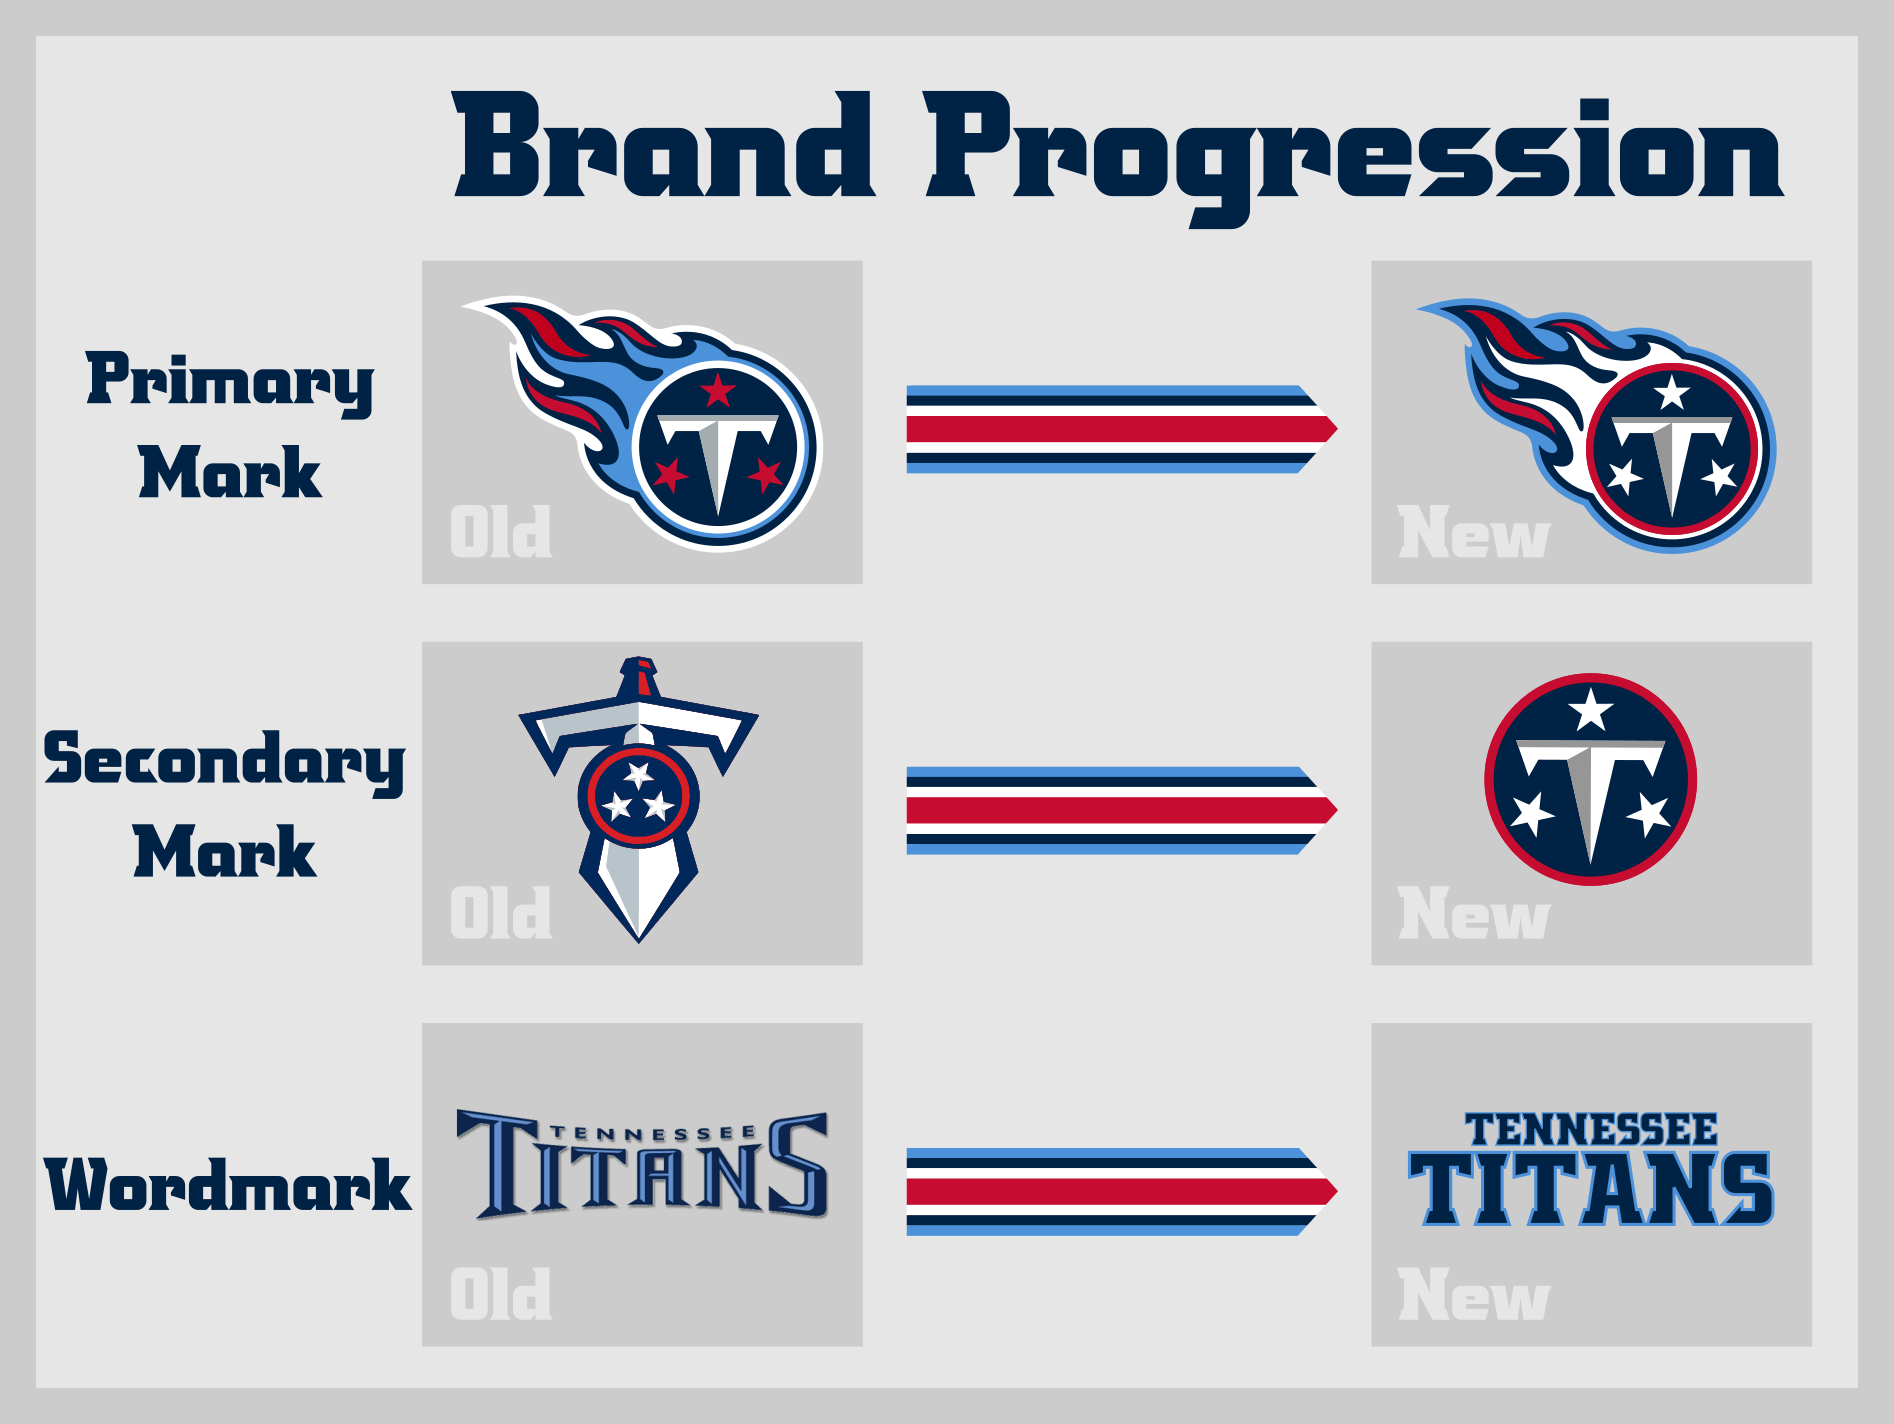 New Titans Logo - Tennessee Titans Brand Progression Creamer's